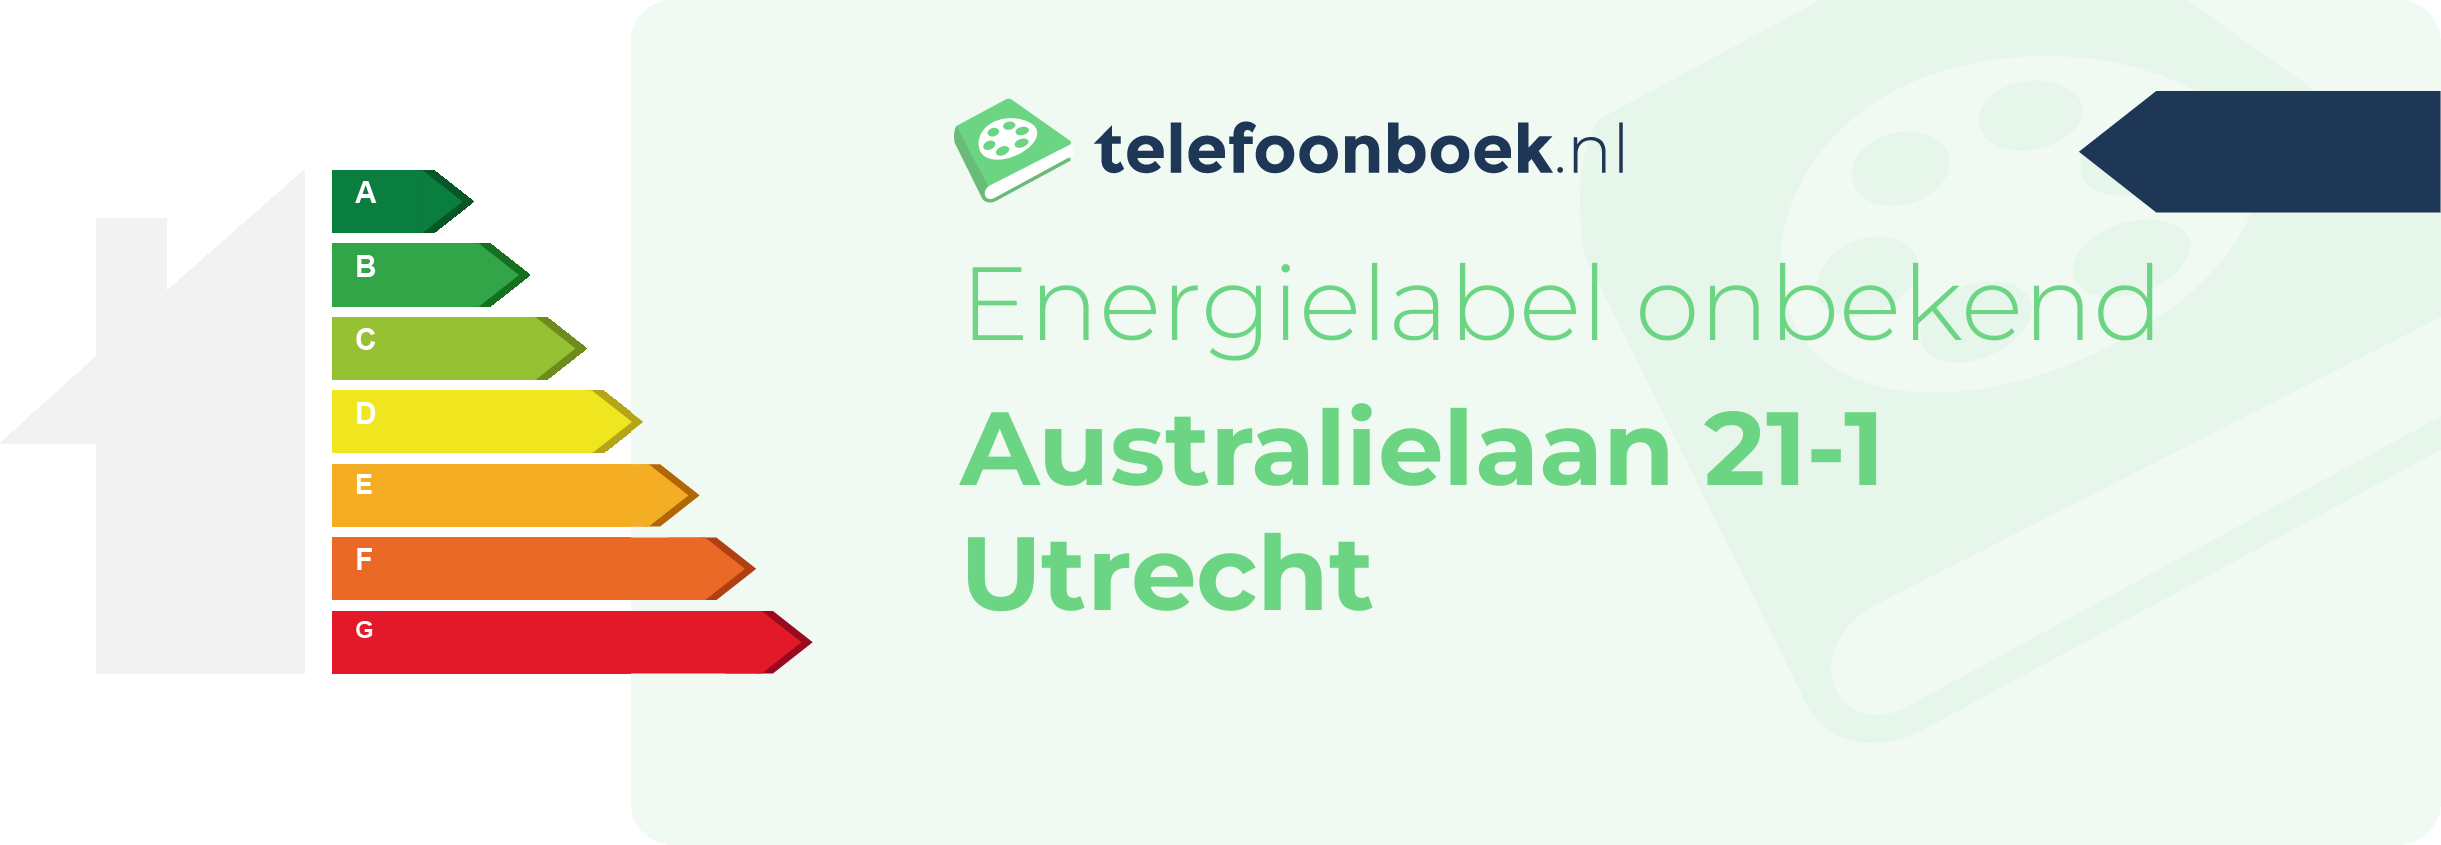 Energielabel Australielaan 21-1 Utrecht